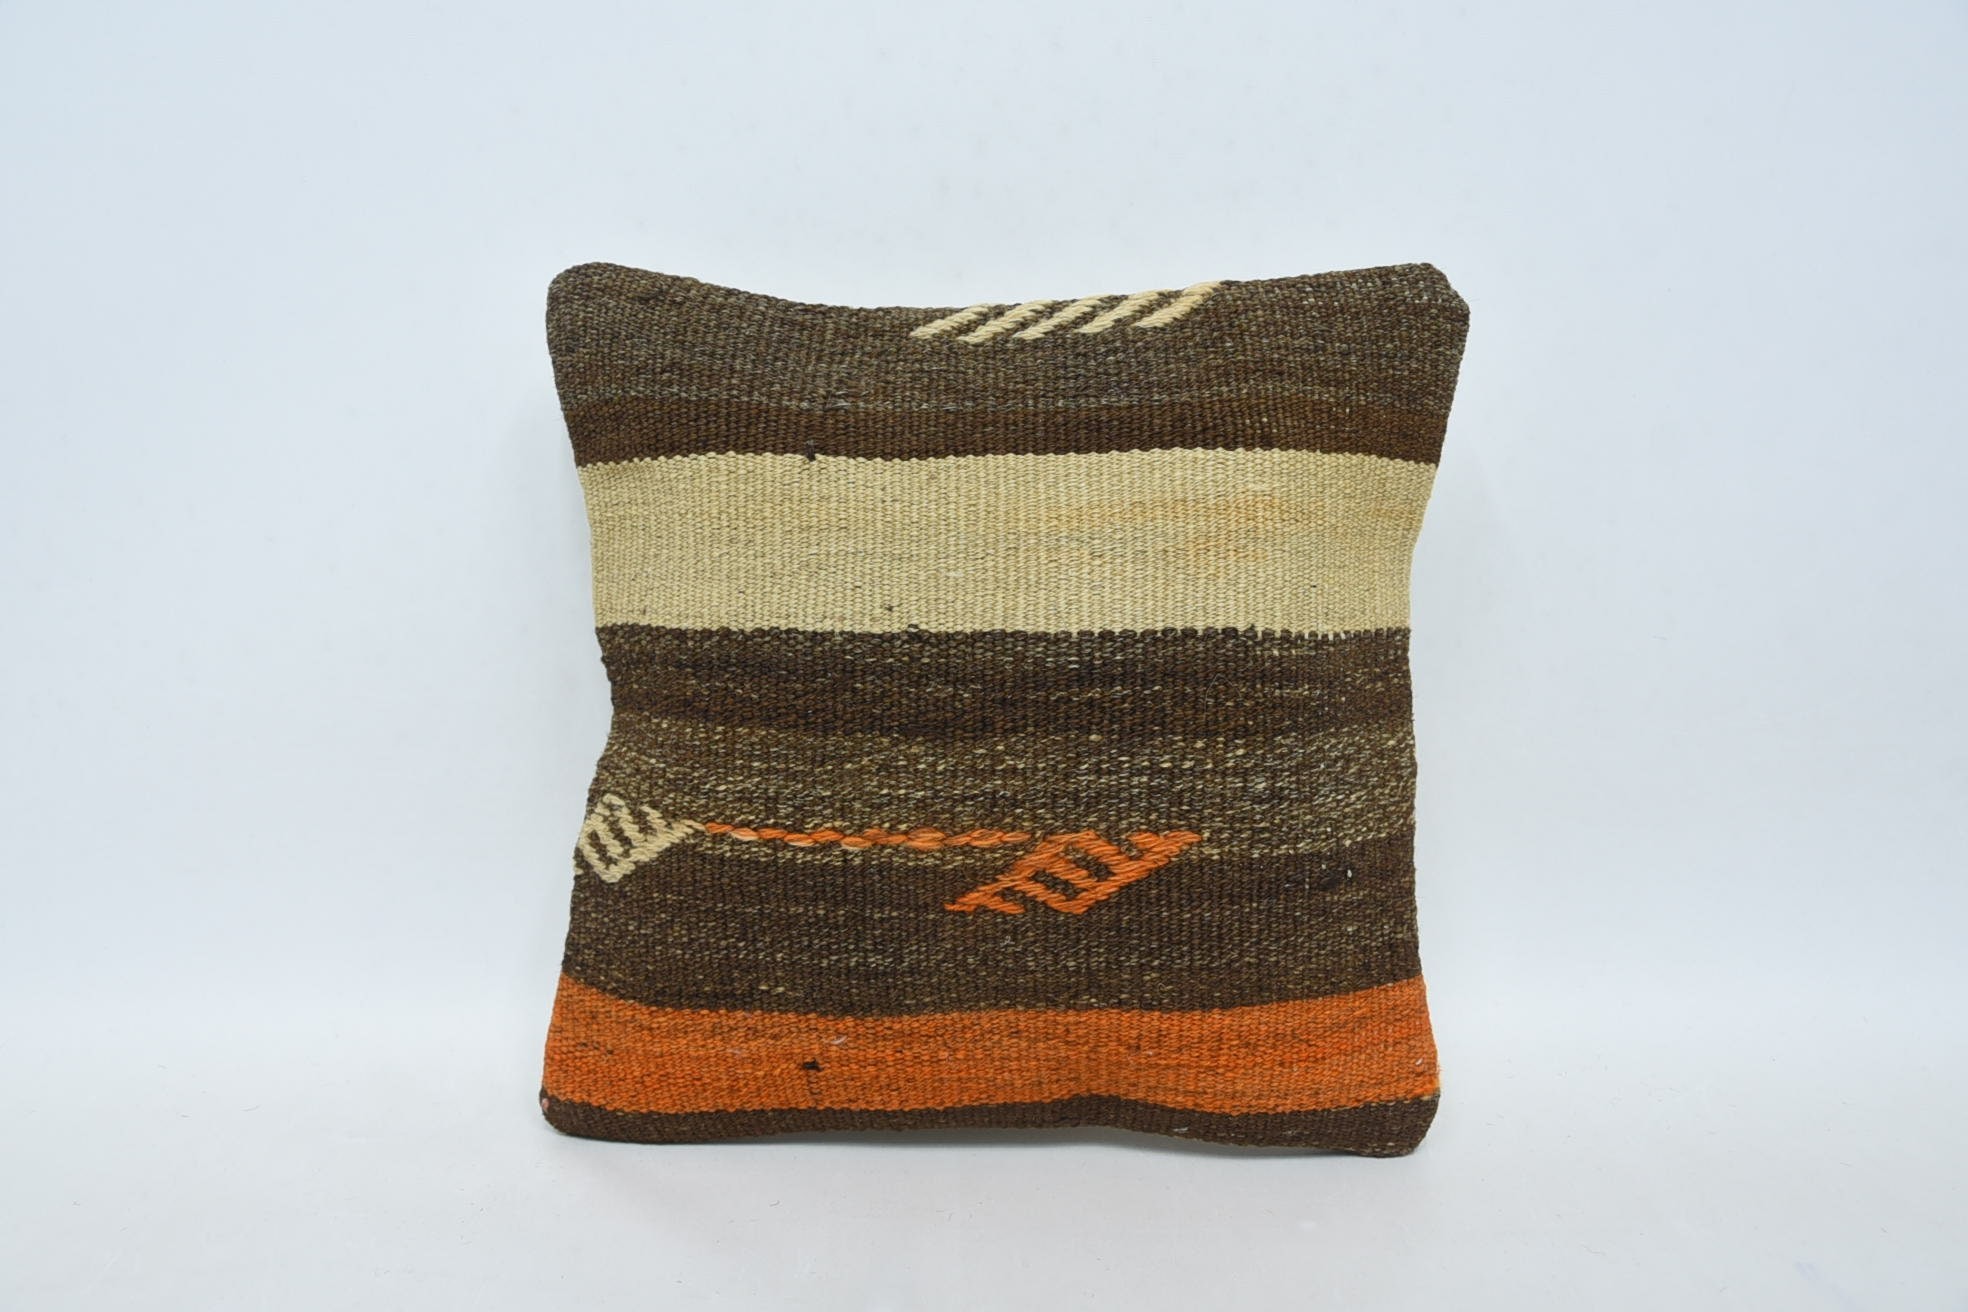 Wholesale Pillow Case, 12"x12" Brown Cushion, Crochet Pattern Pillow Case, Kilim Pillow, Boho Pillow, Kilim Cushion Sham